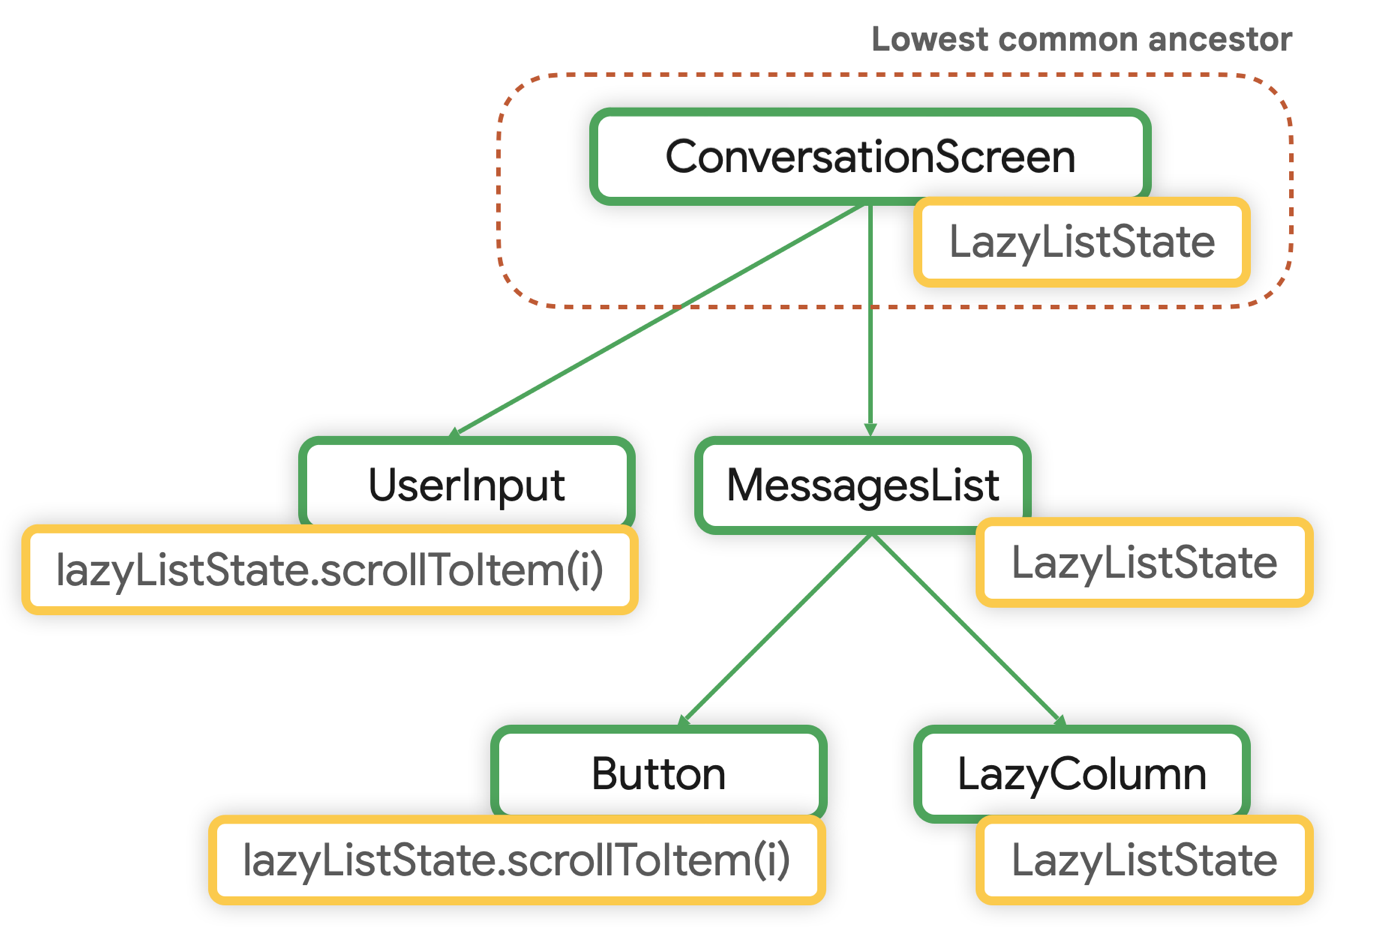 Najniższym wspólnym elementem nadrzędnym LazyListState jest ConversationScreen